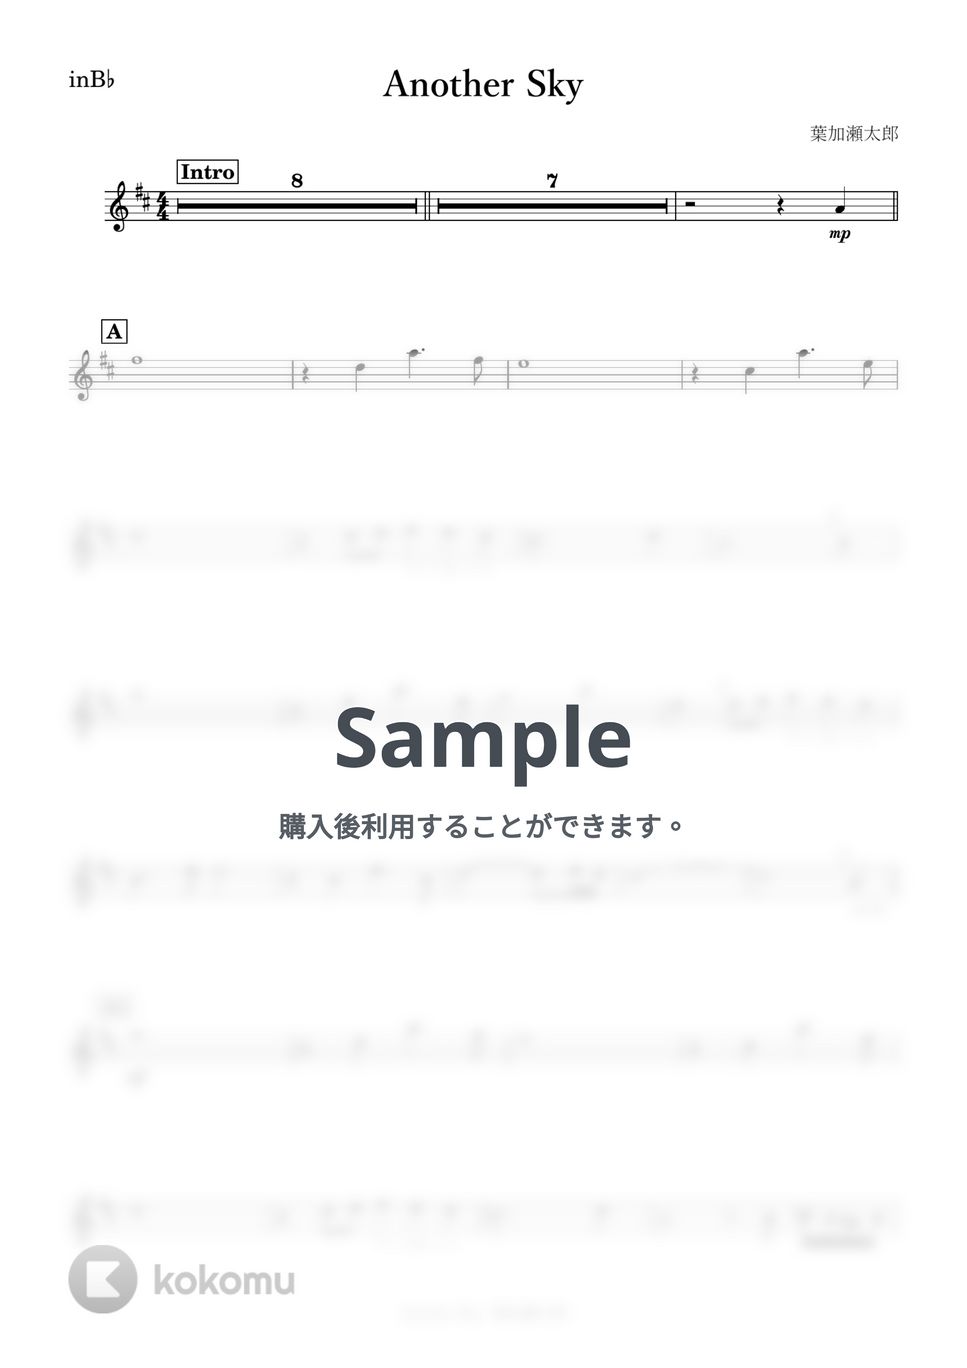 葉加瀬太郎 - Another Sky (B♭) by kanamusic